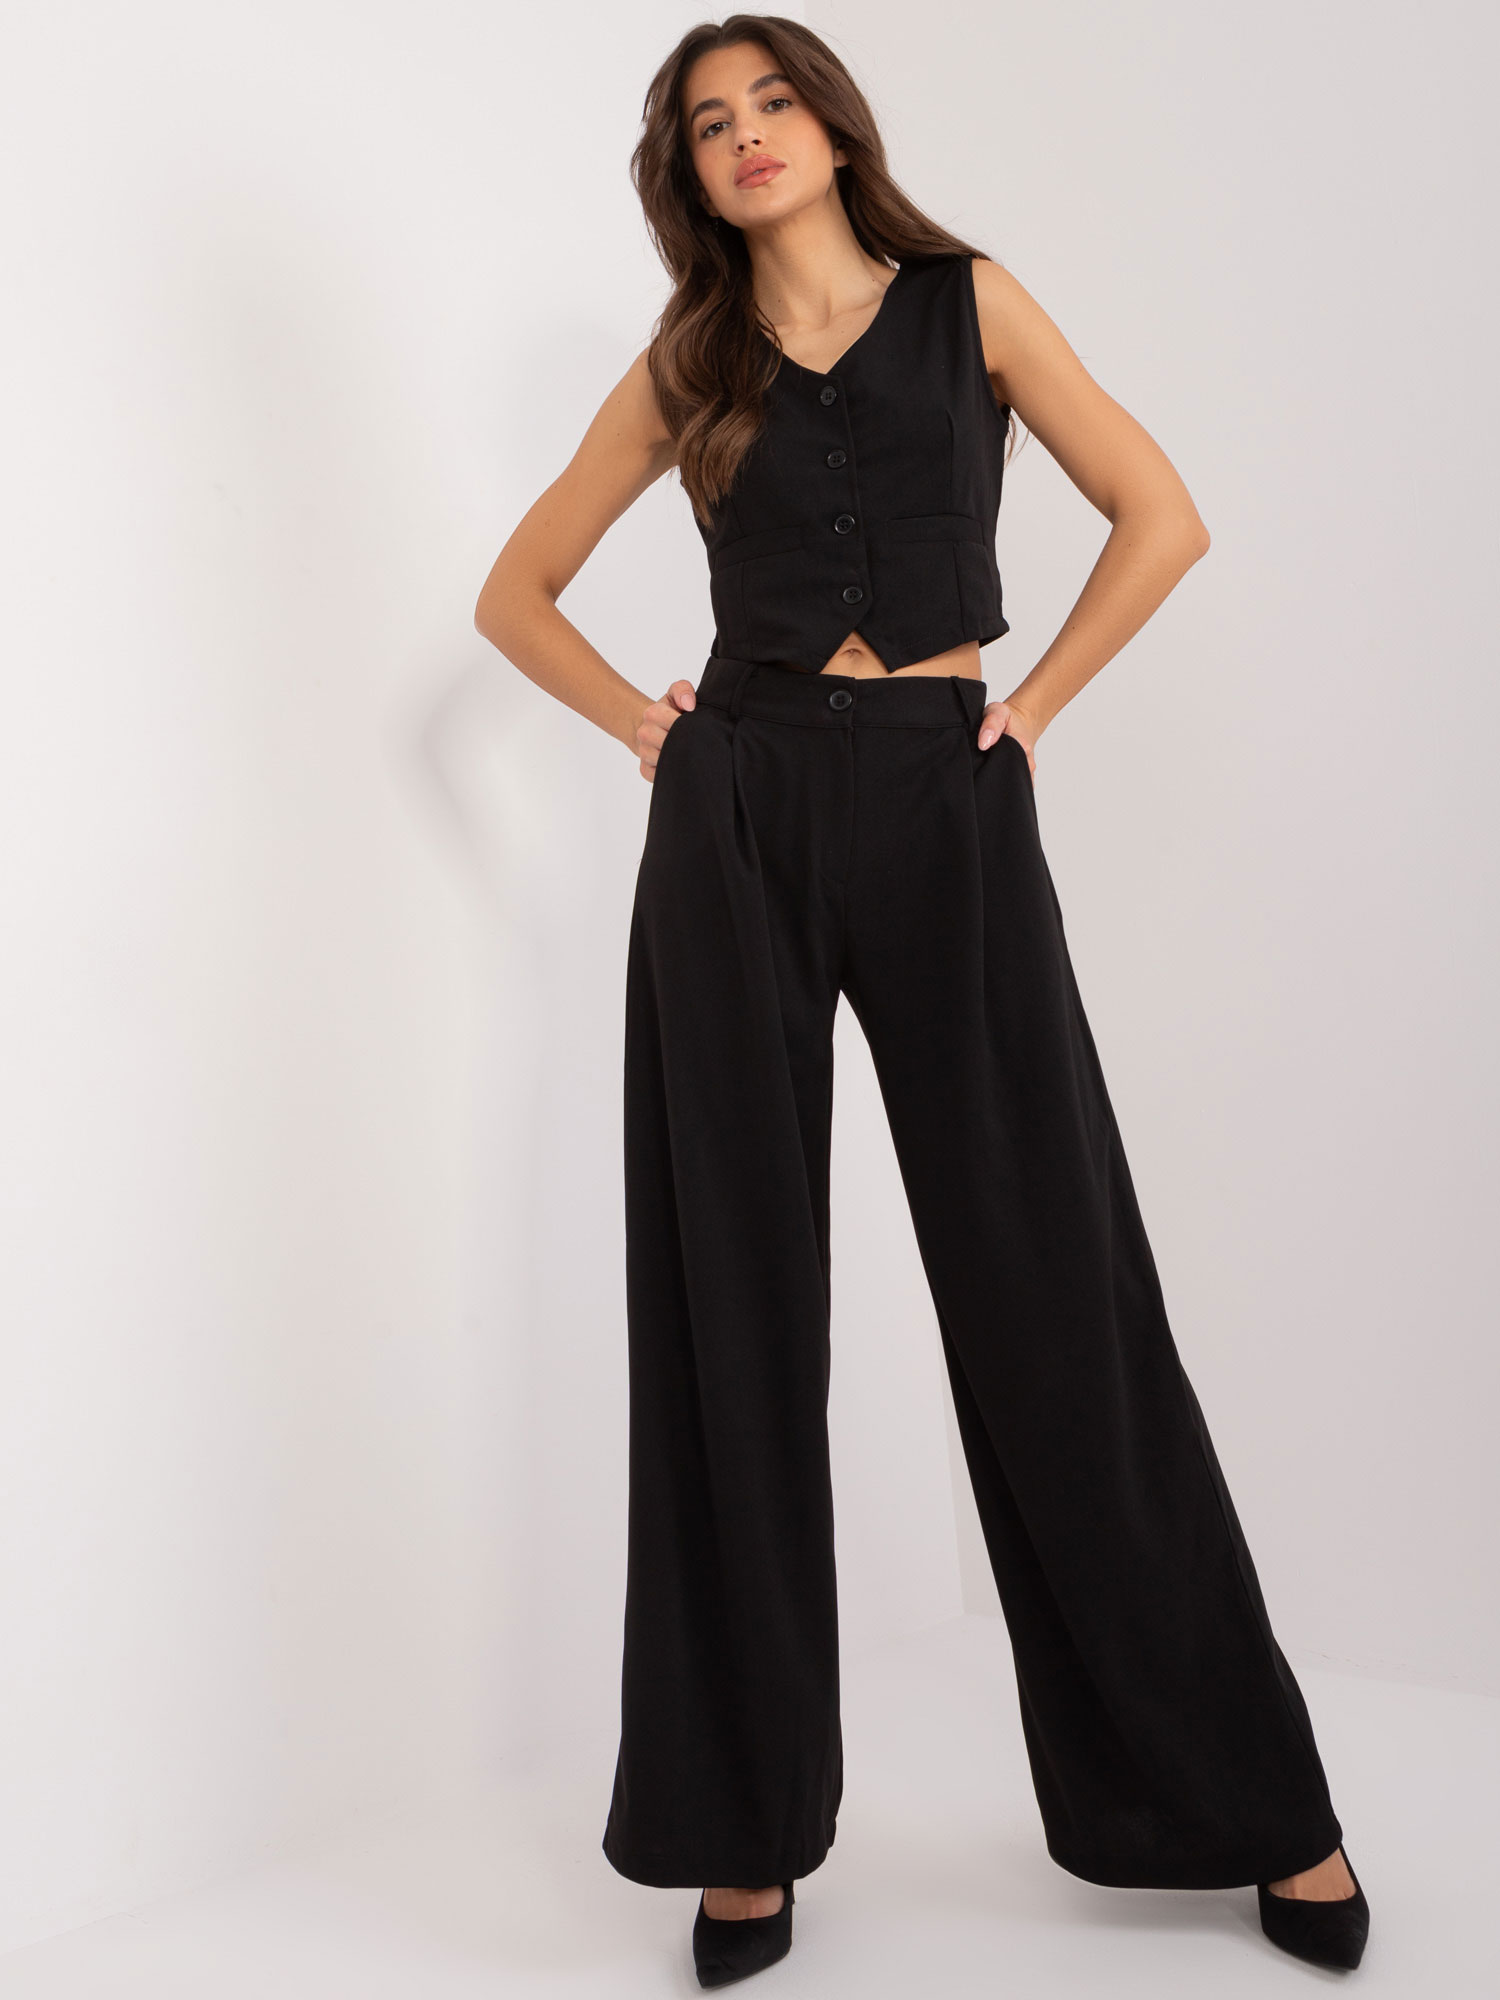 Černý elegantní komplet vesty a širokých kalhot WN-KMPL-VE90.26-black Velikost: XL